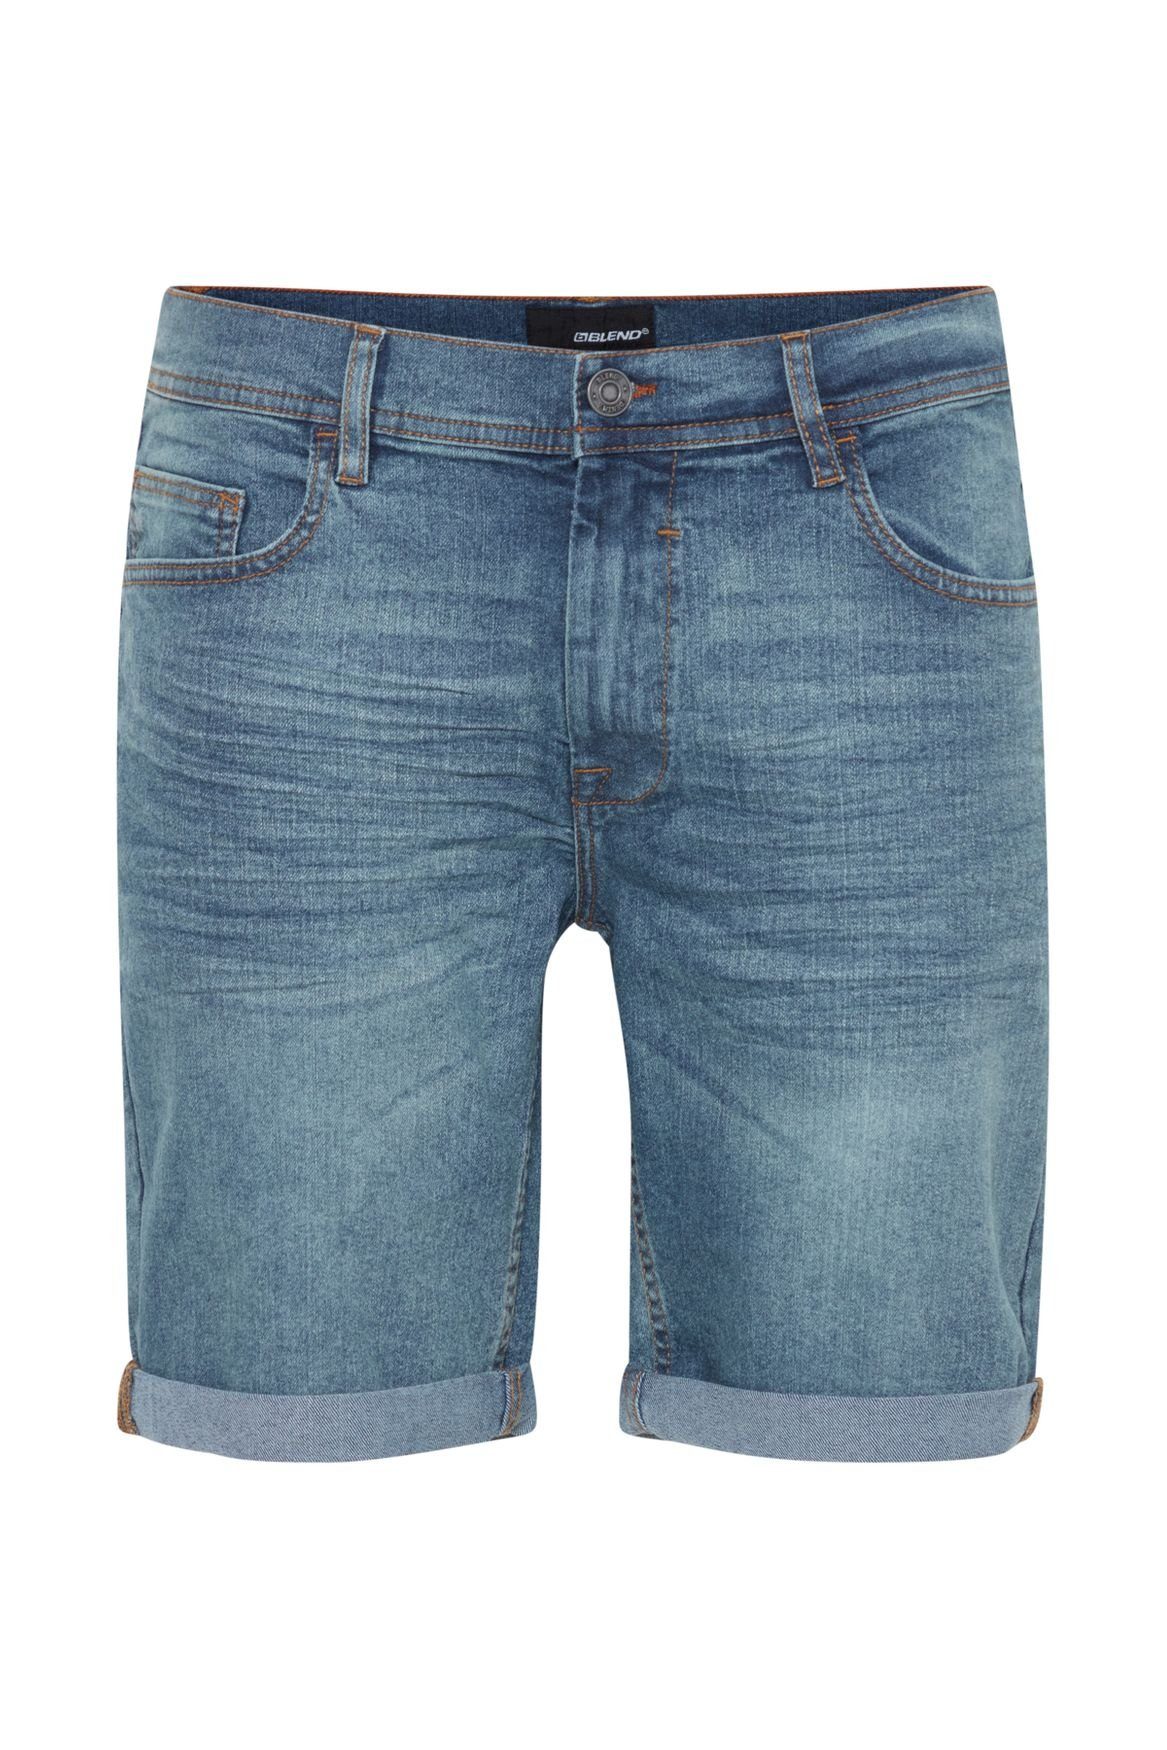 Blend Jeansshorts Denim Capri Hose 5087 Jeans 3/4 in Shorts Blau Bermuda